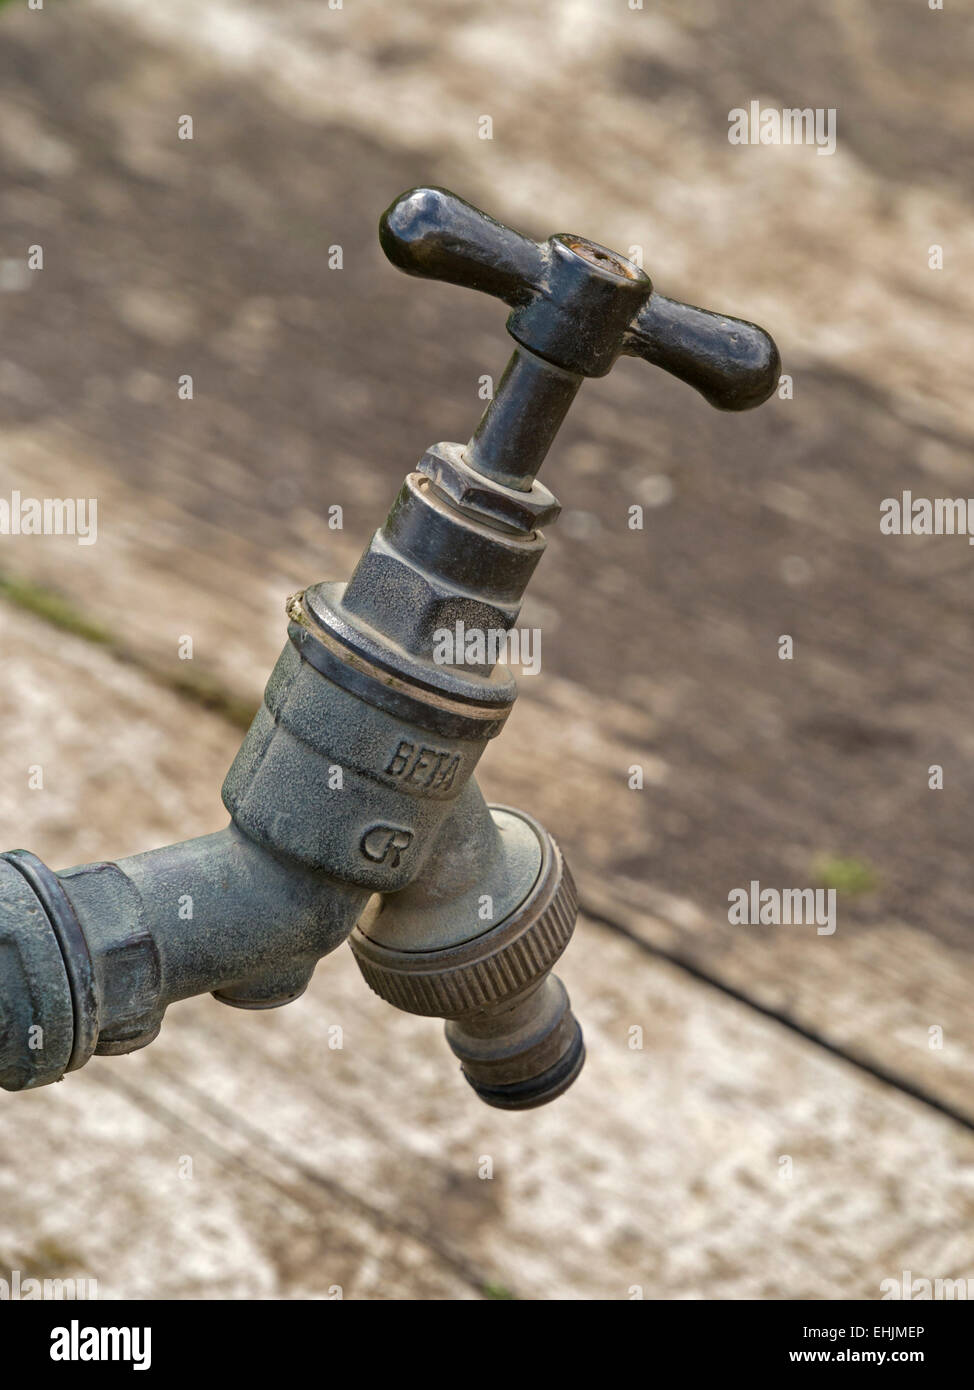 Old outdoor metal garden water tap detail Stock Photo